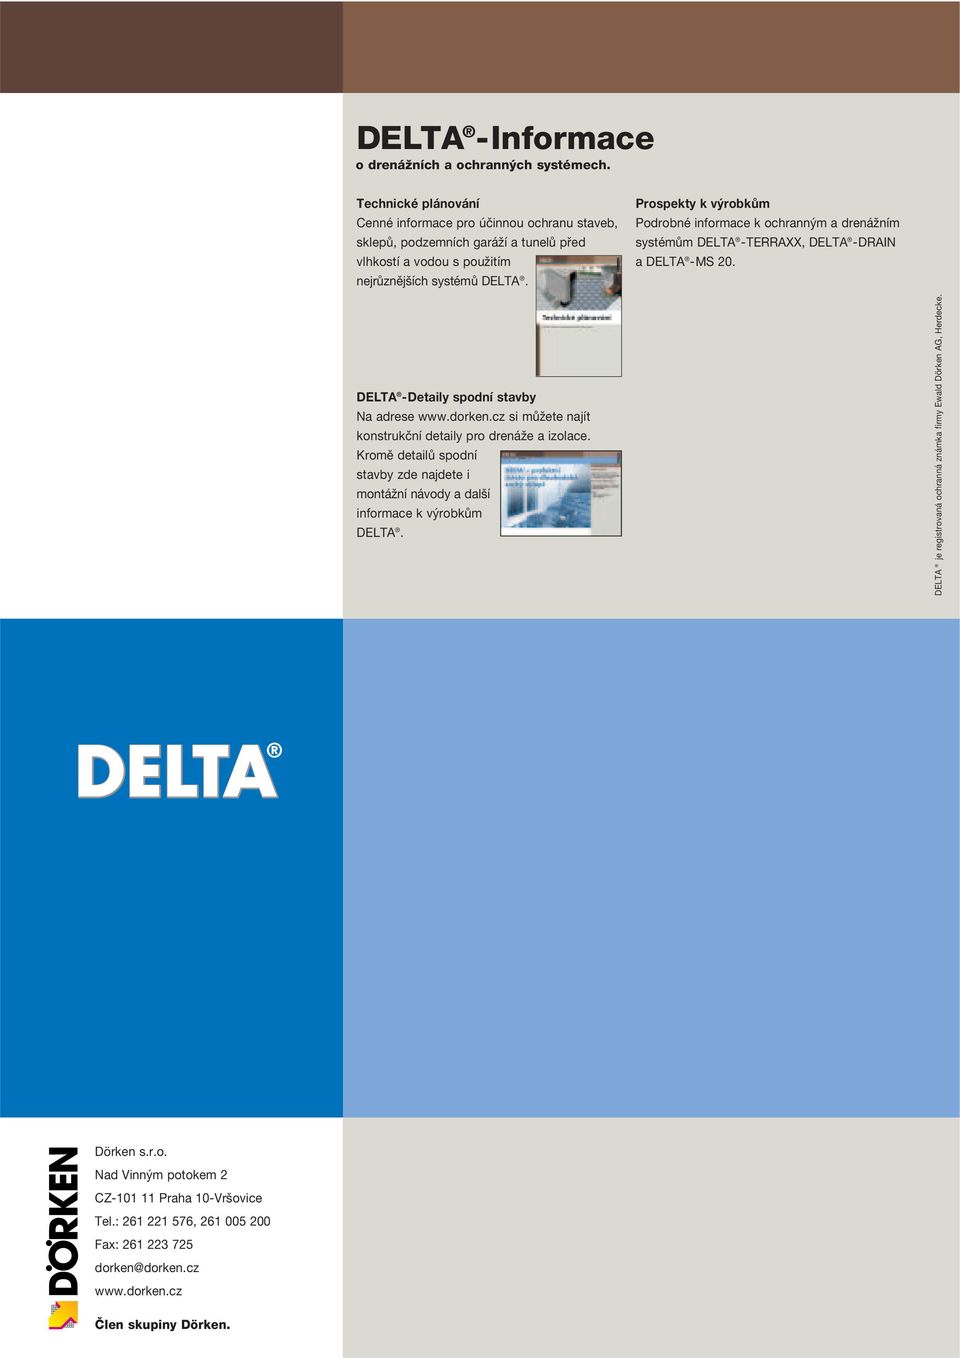 Prospekty k výrobkům Podrobné informace k ochranným a drenážním systémům DELTA -TERRAXX, DELTA -DRAIN a DELTA -MS 20. DELTA -Detaily spodní stavby Na adrese www.dorken.